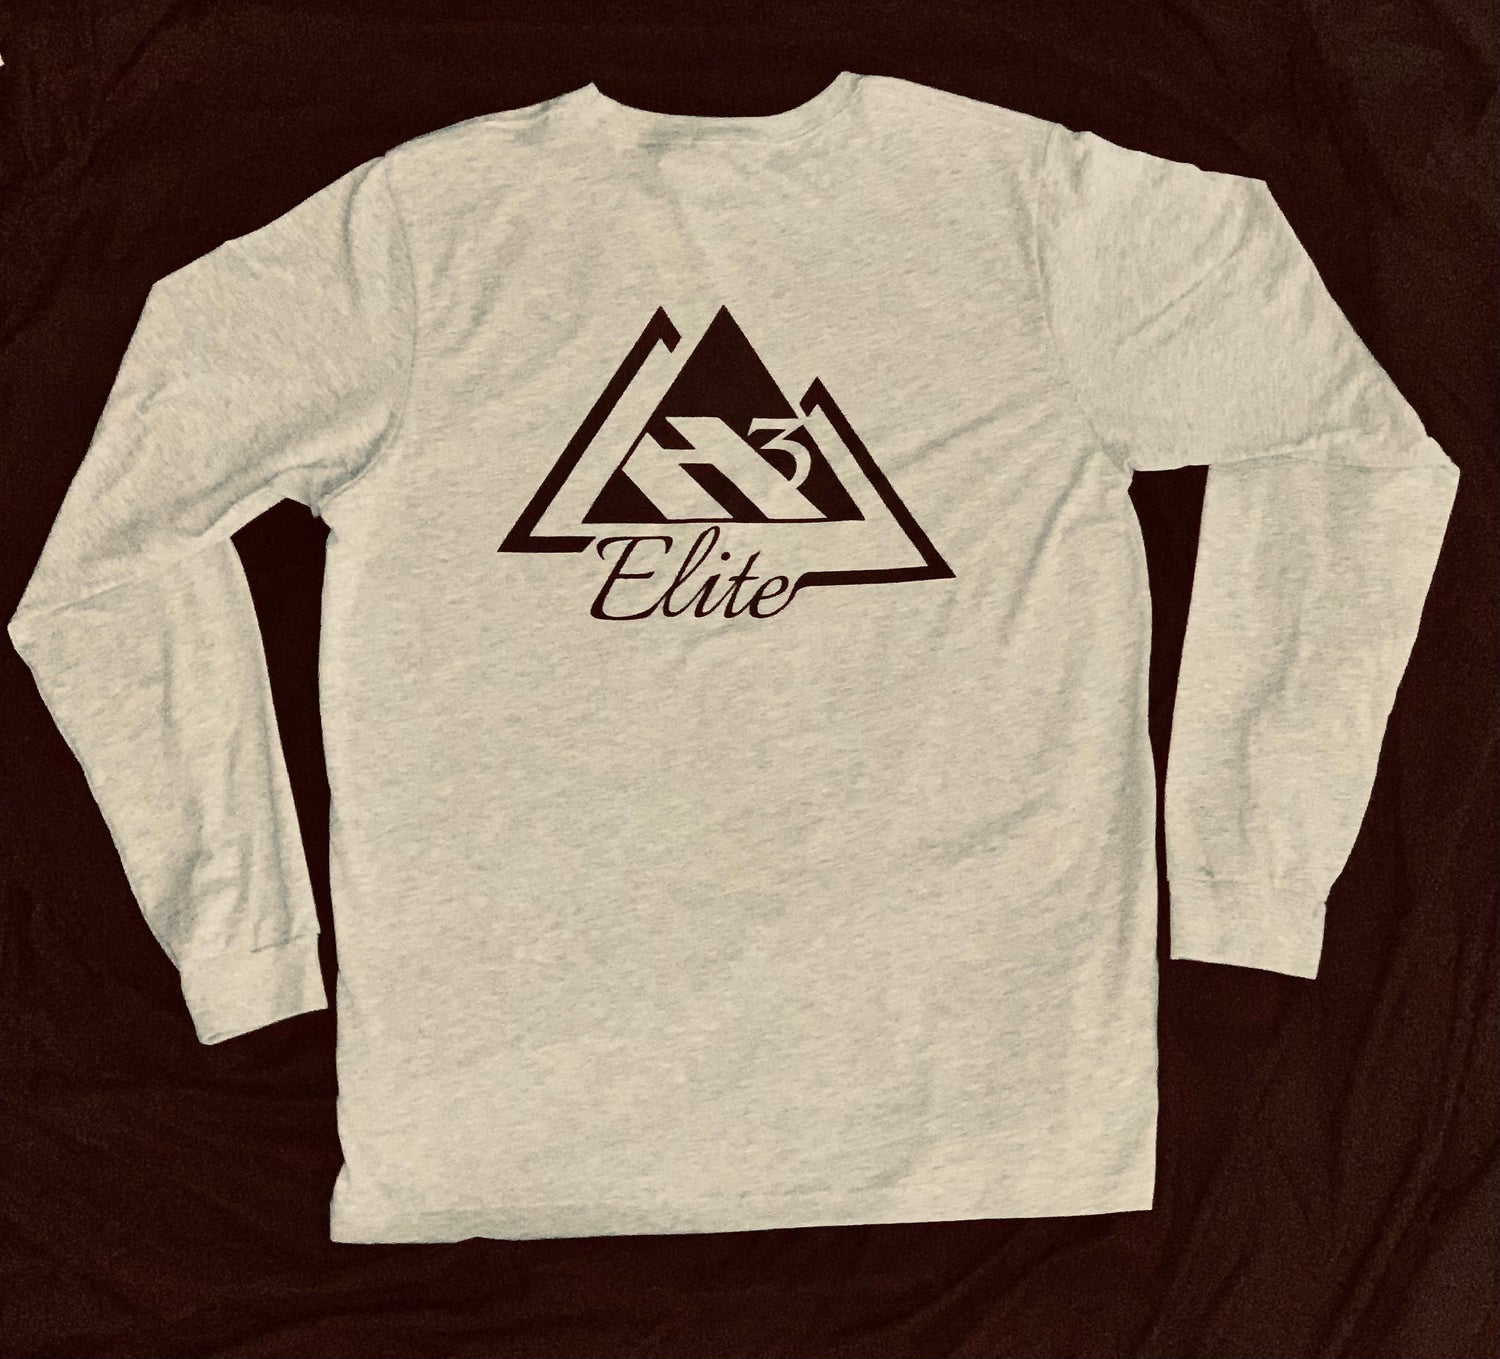 Athletic Heather "Elite Onset" long sleeve t-shirt with white logo (back)